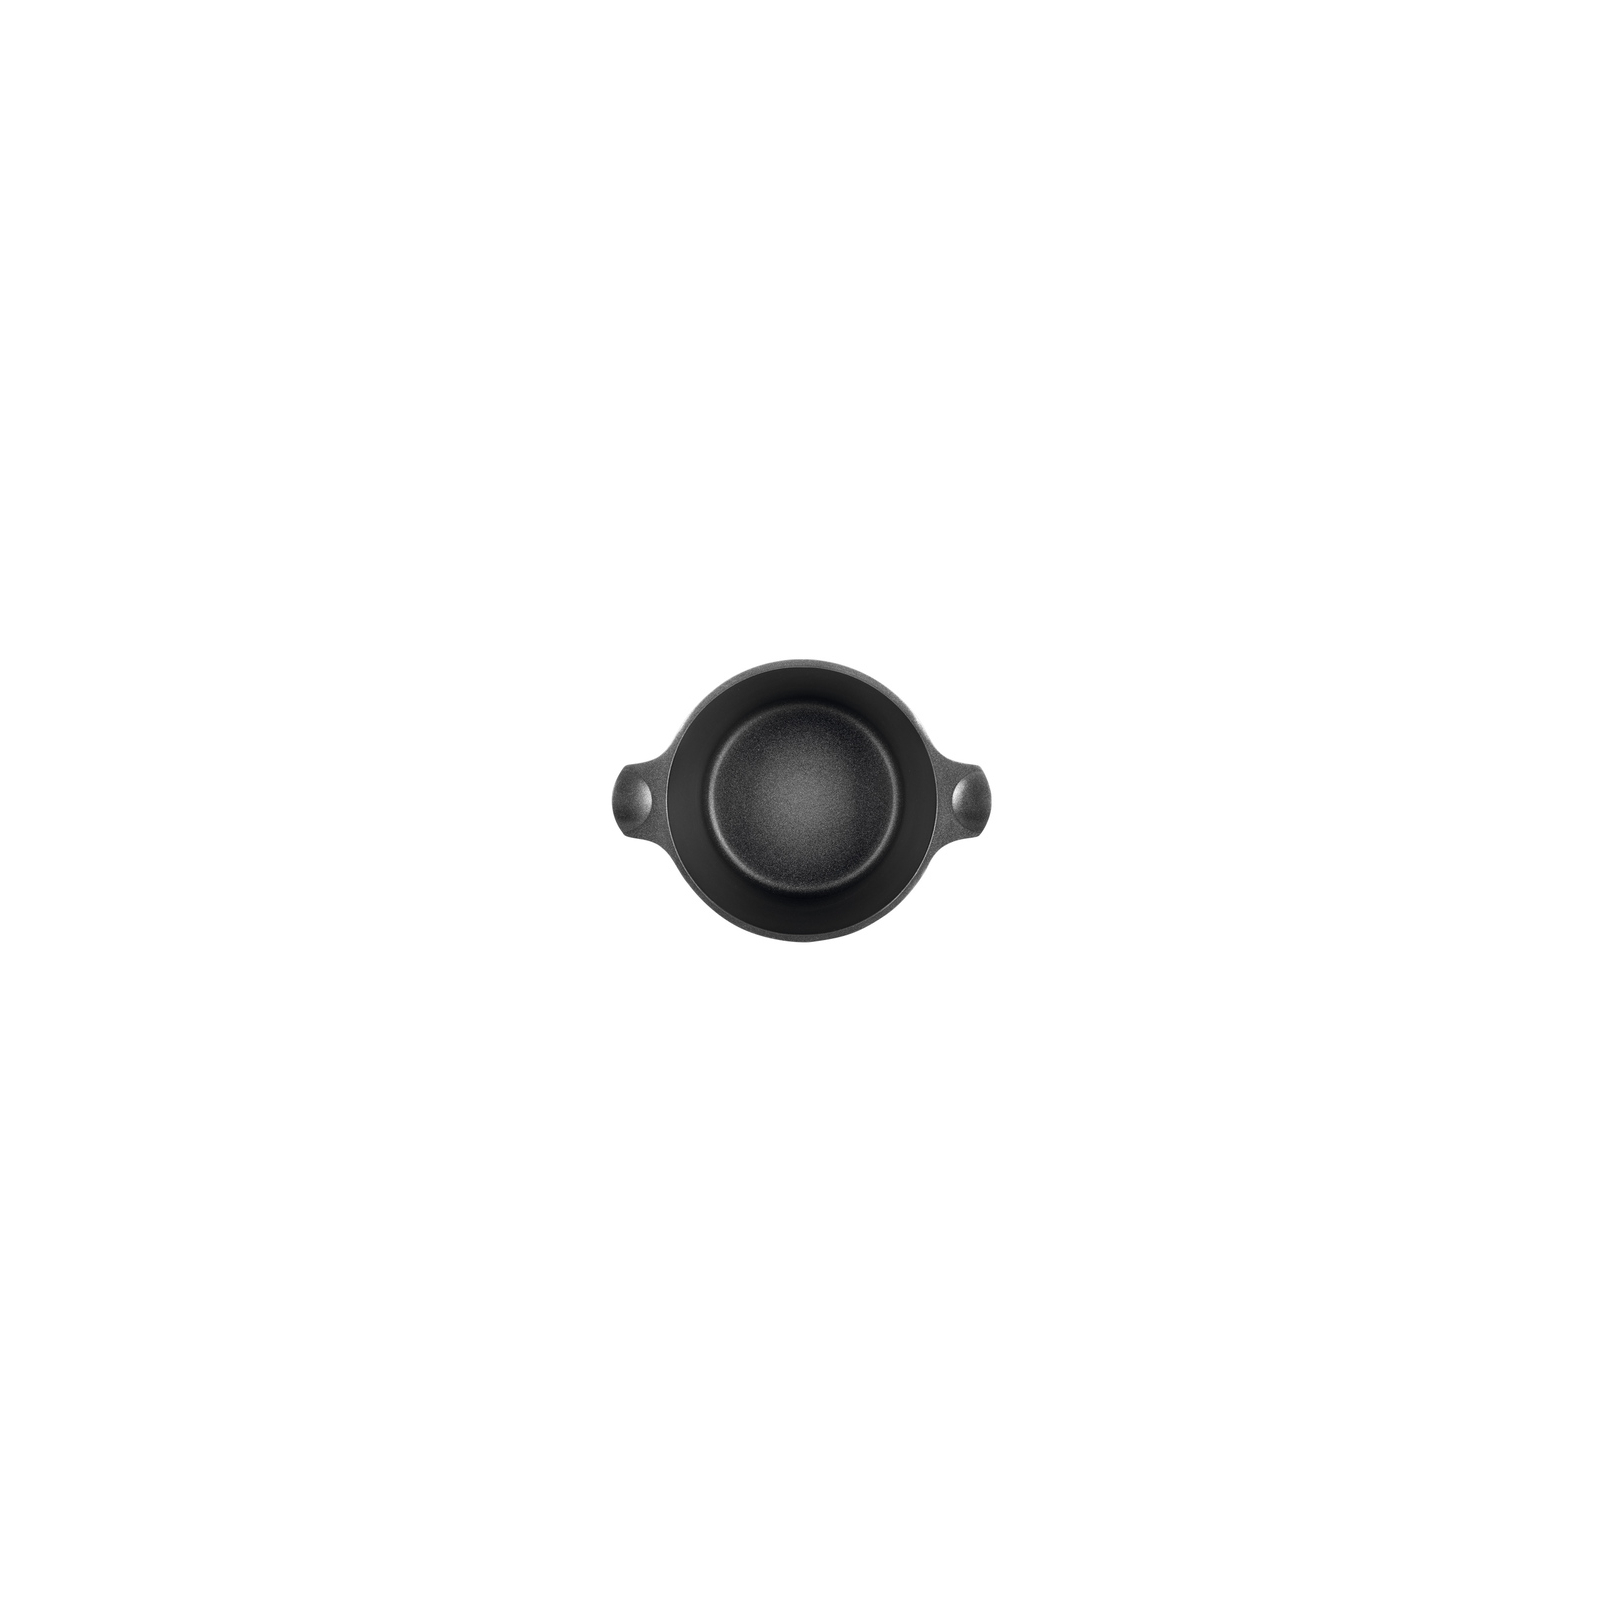 Кастрюля Ringel Zitrone black с крышкой 4,2 л (RG-2108-24/1 BL) изображение 5